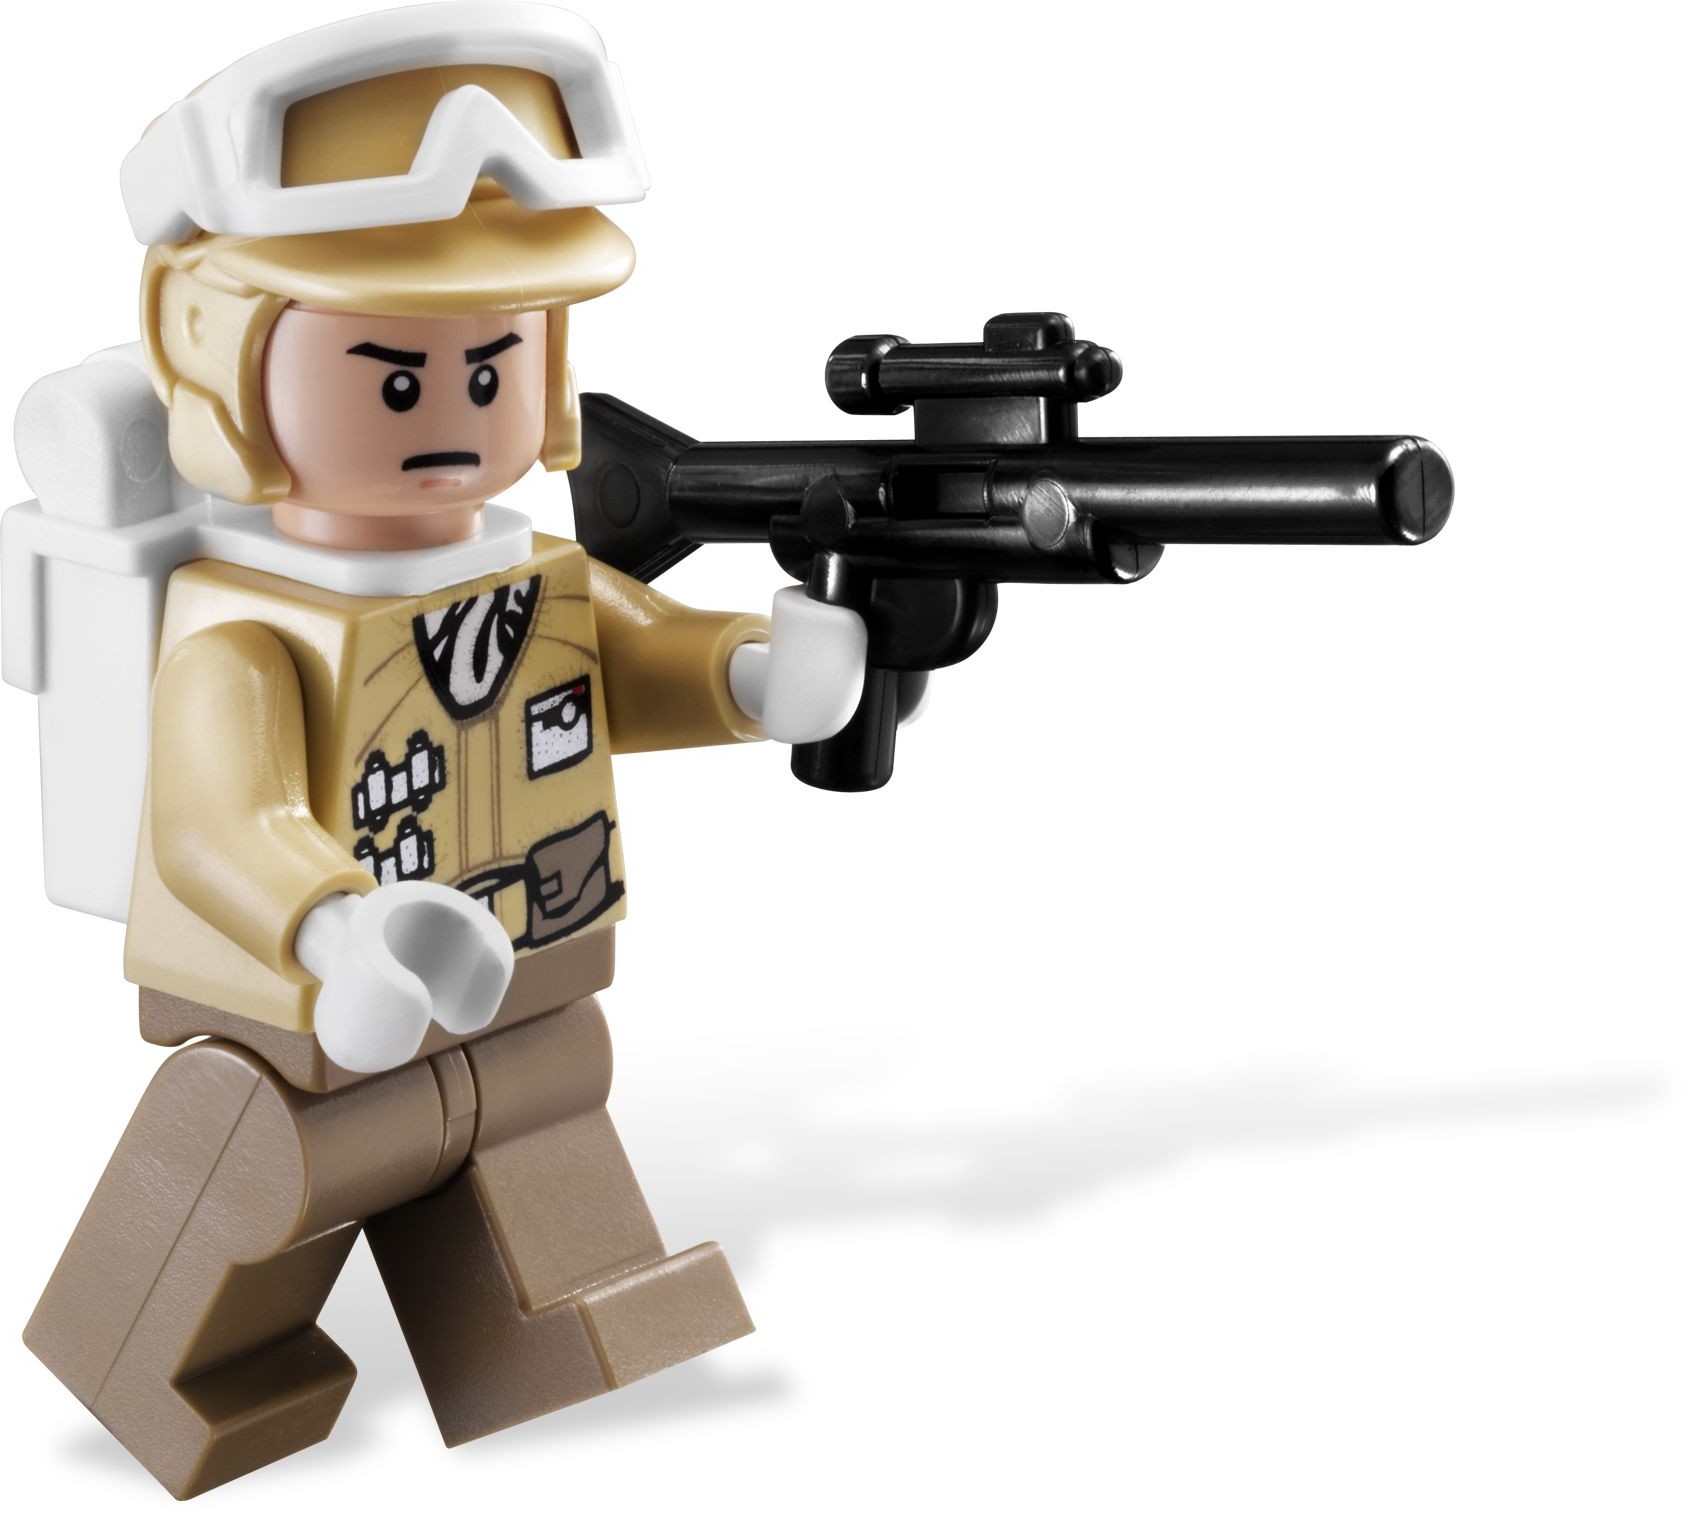 Details about   Lego 8083 Star Wars Rebel Trooper Battle Pack show original title